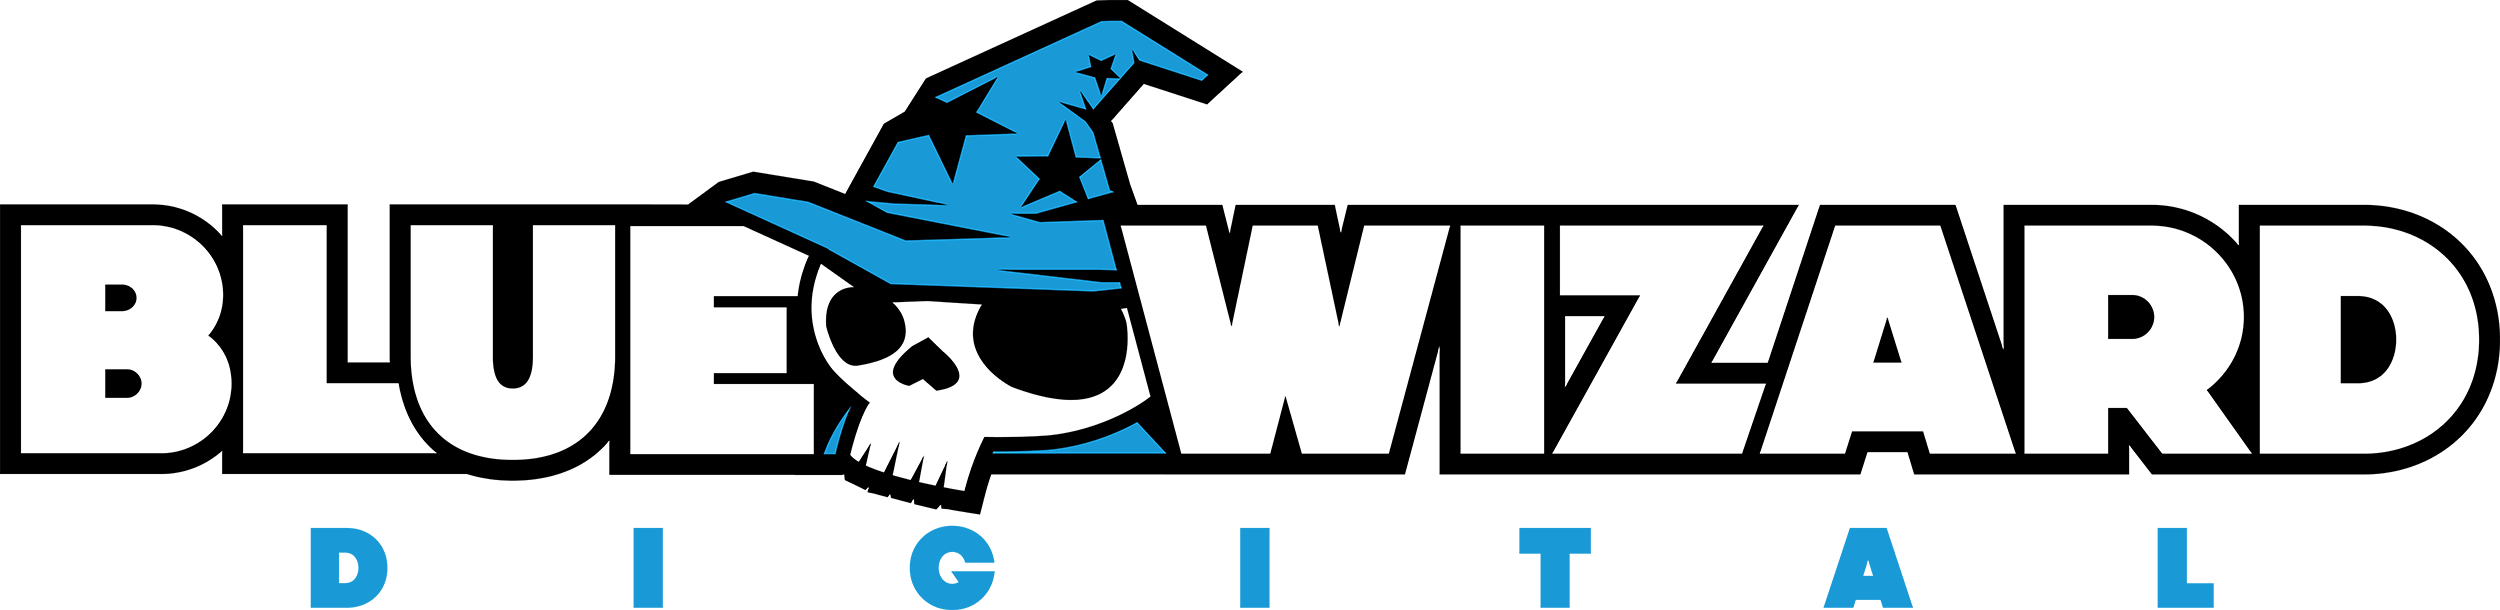 Blue Wizard Logo - Blue Wizard Logo (2500x610)